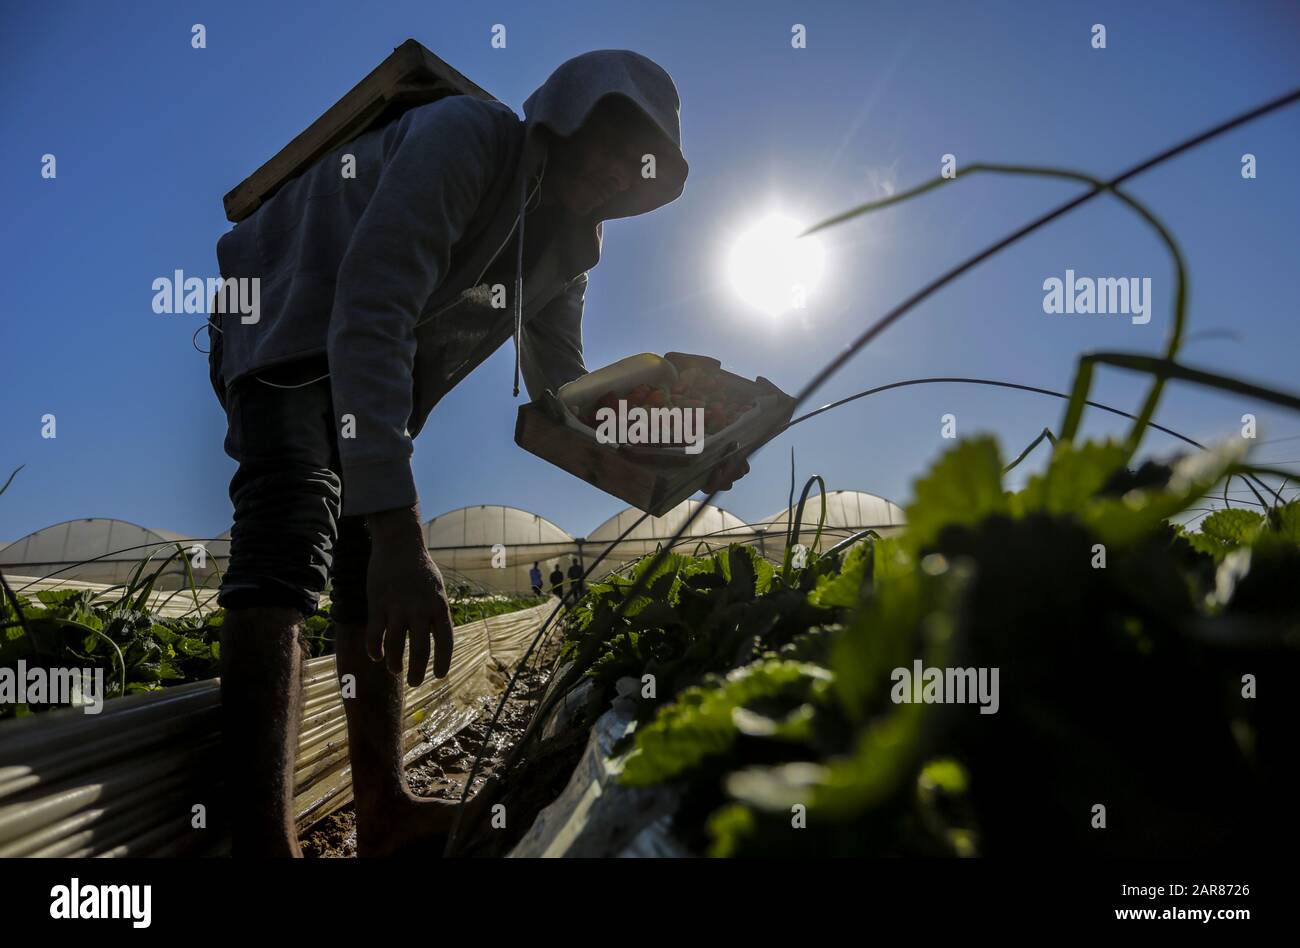 Gaza, La Bande De Gaza, Palestine. 21 décembre 2019. Un agriculteur palestinien remplit une boîte de fraises récoltées dans une ferme de Beit Lahia, dans le nord de la bande de Gaza. Les agriculteurs de Gaza espèrent exporter 1 100 tonnes de fraises vers l'Europe, Israël et la Cisjordanie à travers un blocus israélien partiellement atténué aux frontières de Gaza. Crédit: Mahmoud Issa/Sopa Images/Zuma Wire/Alay Live News Banque D'Images